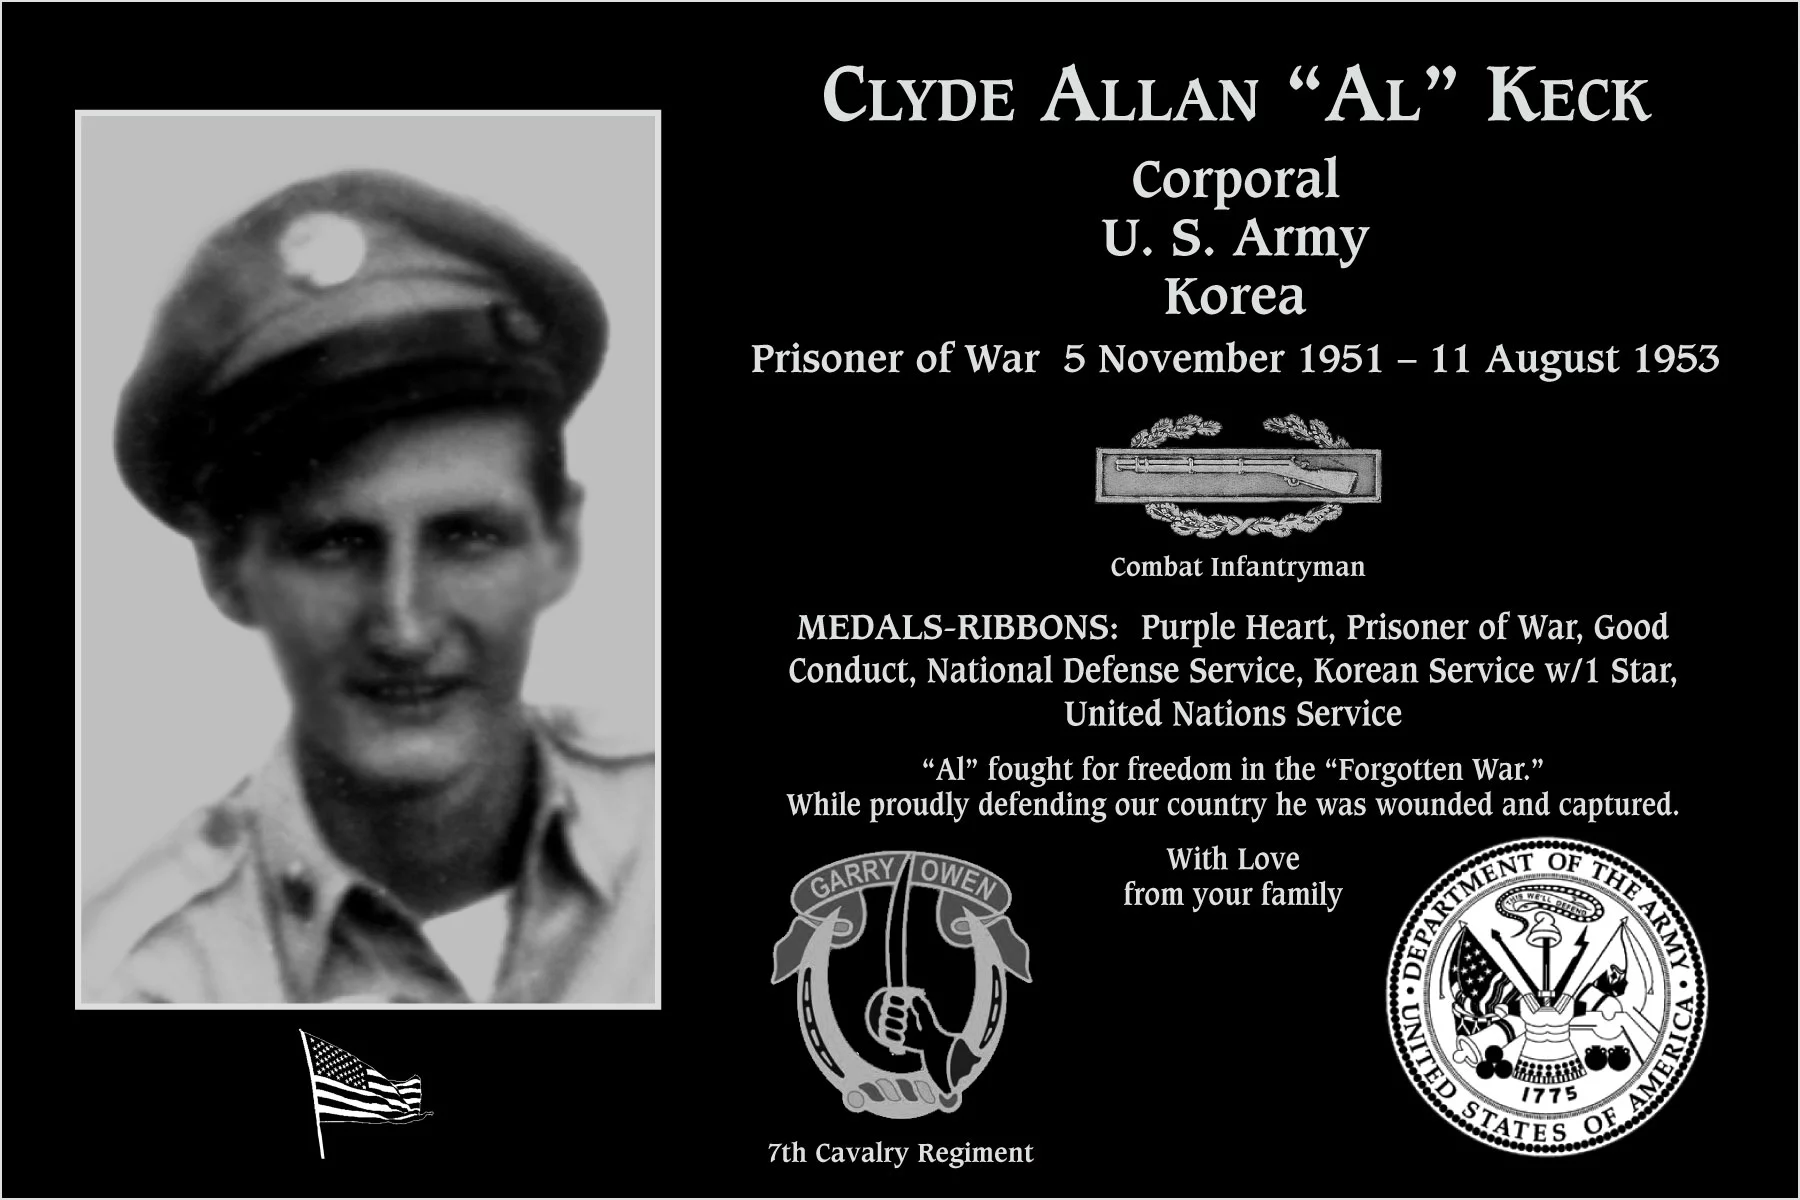 Clyde Allan “Al” Keck